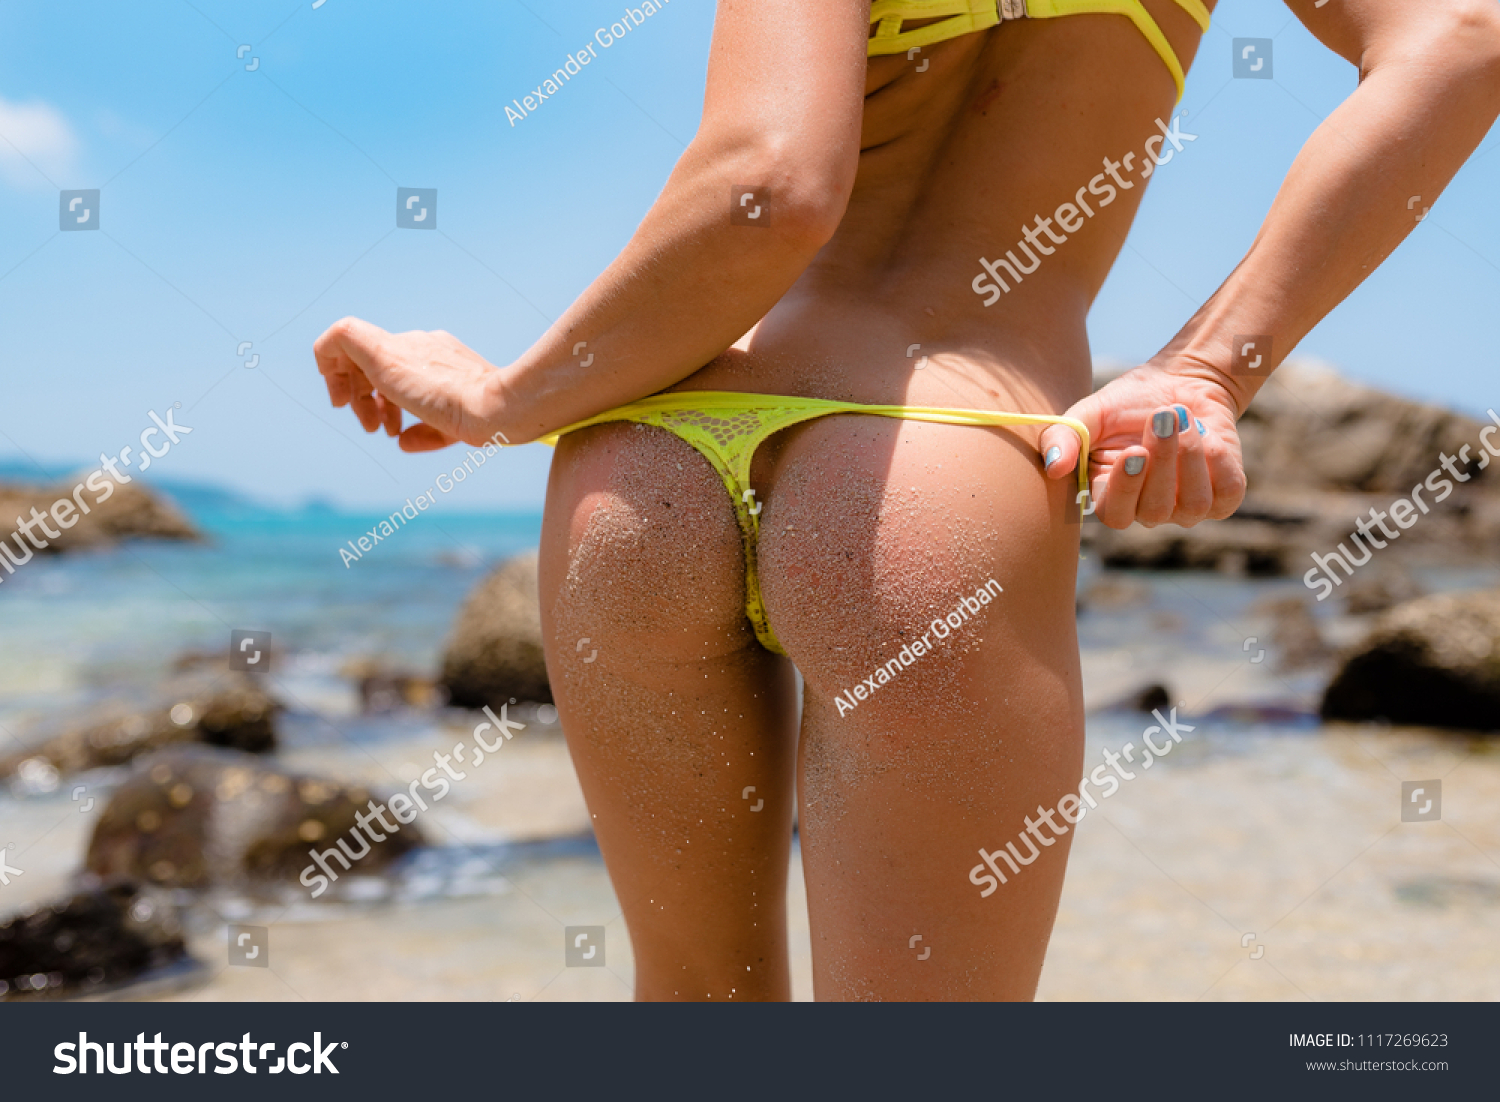 connor price share hot bikini ass pic photos